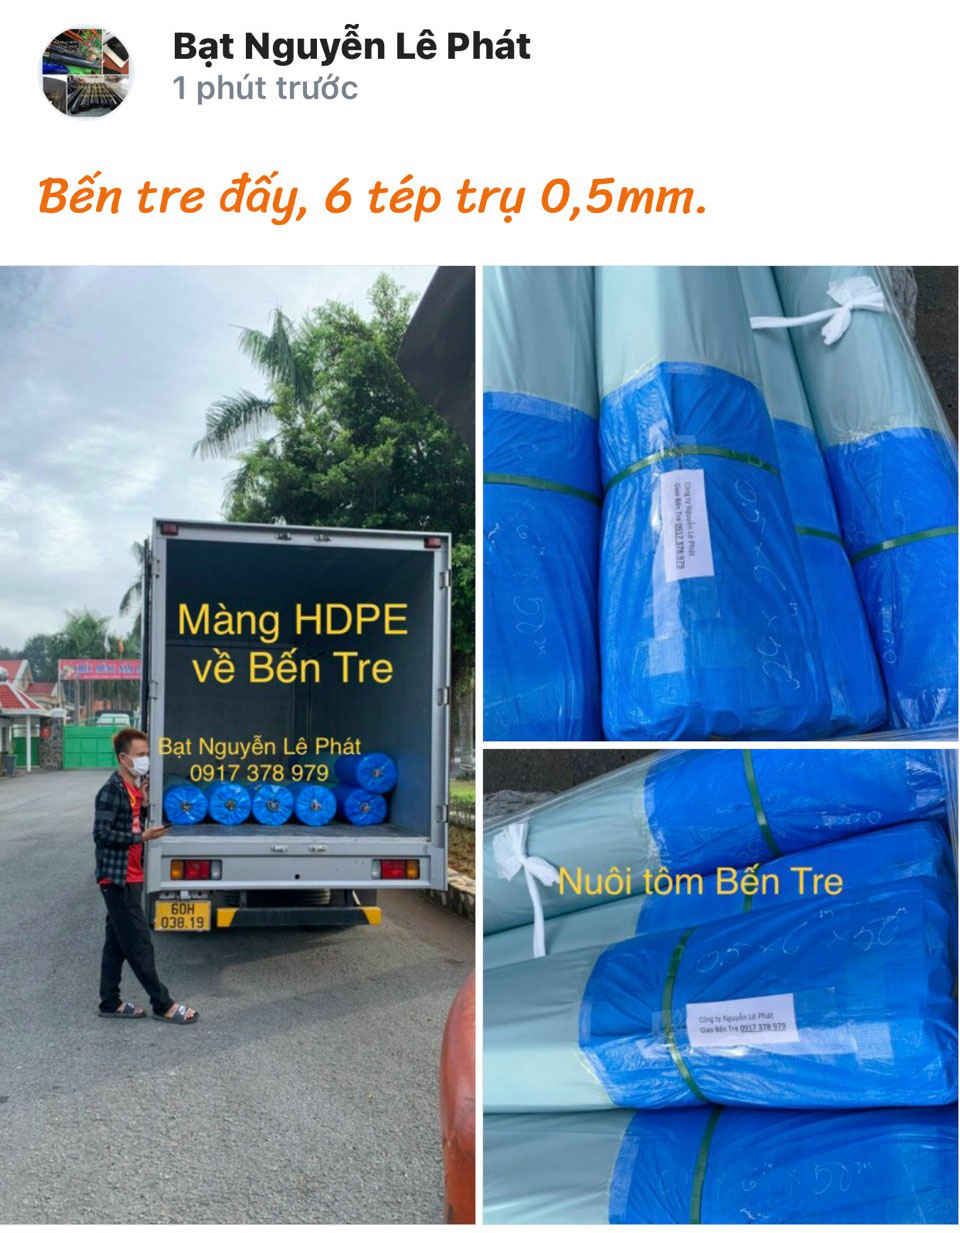 Báo giá bán bạt lót ao hồ chứa nước nuôi cá ở Xuân Lộc rẻ